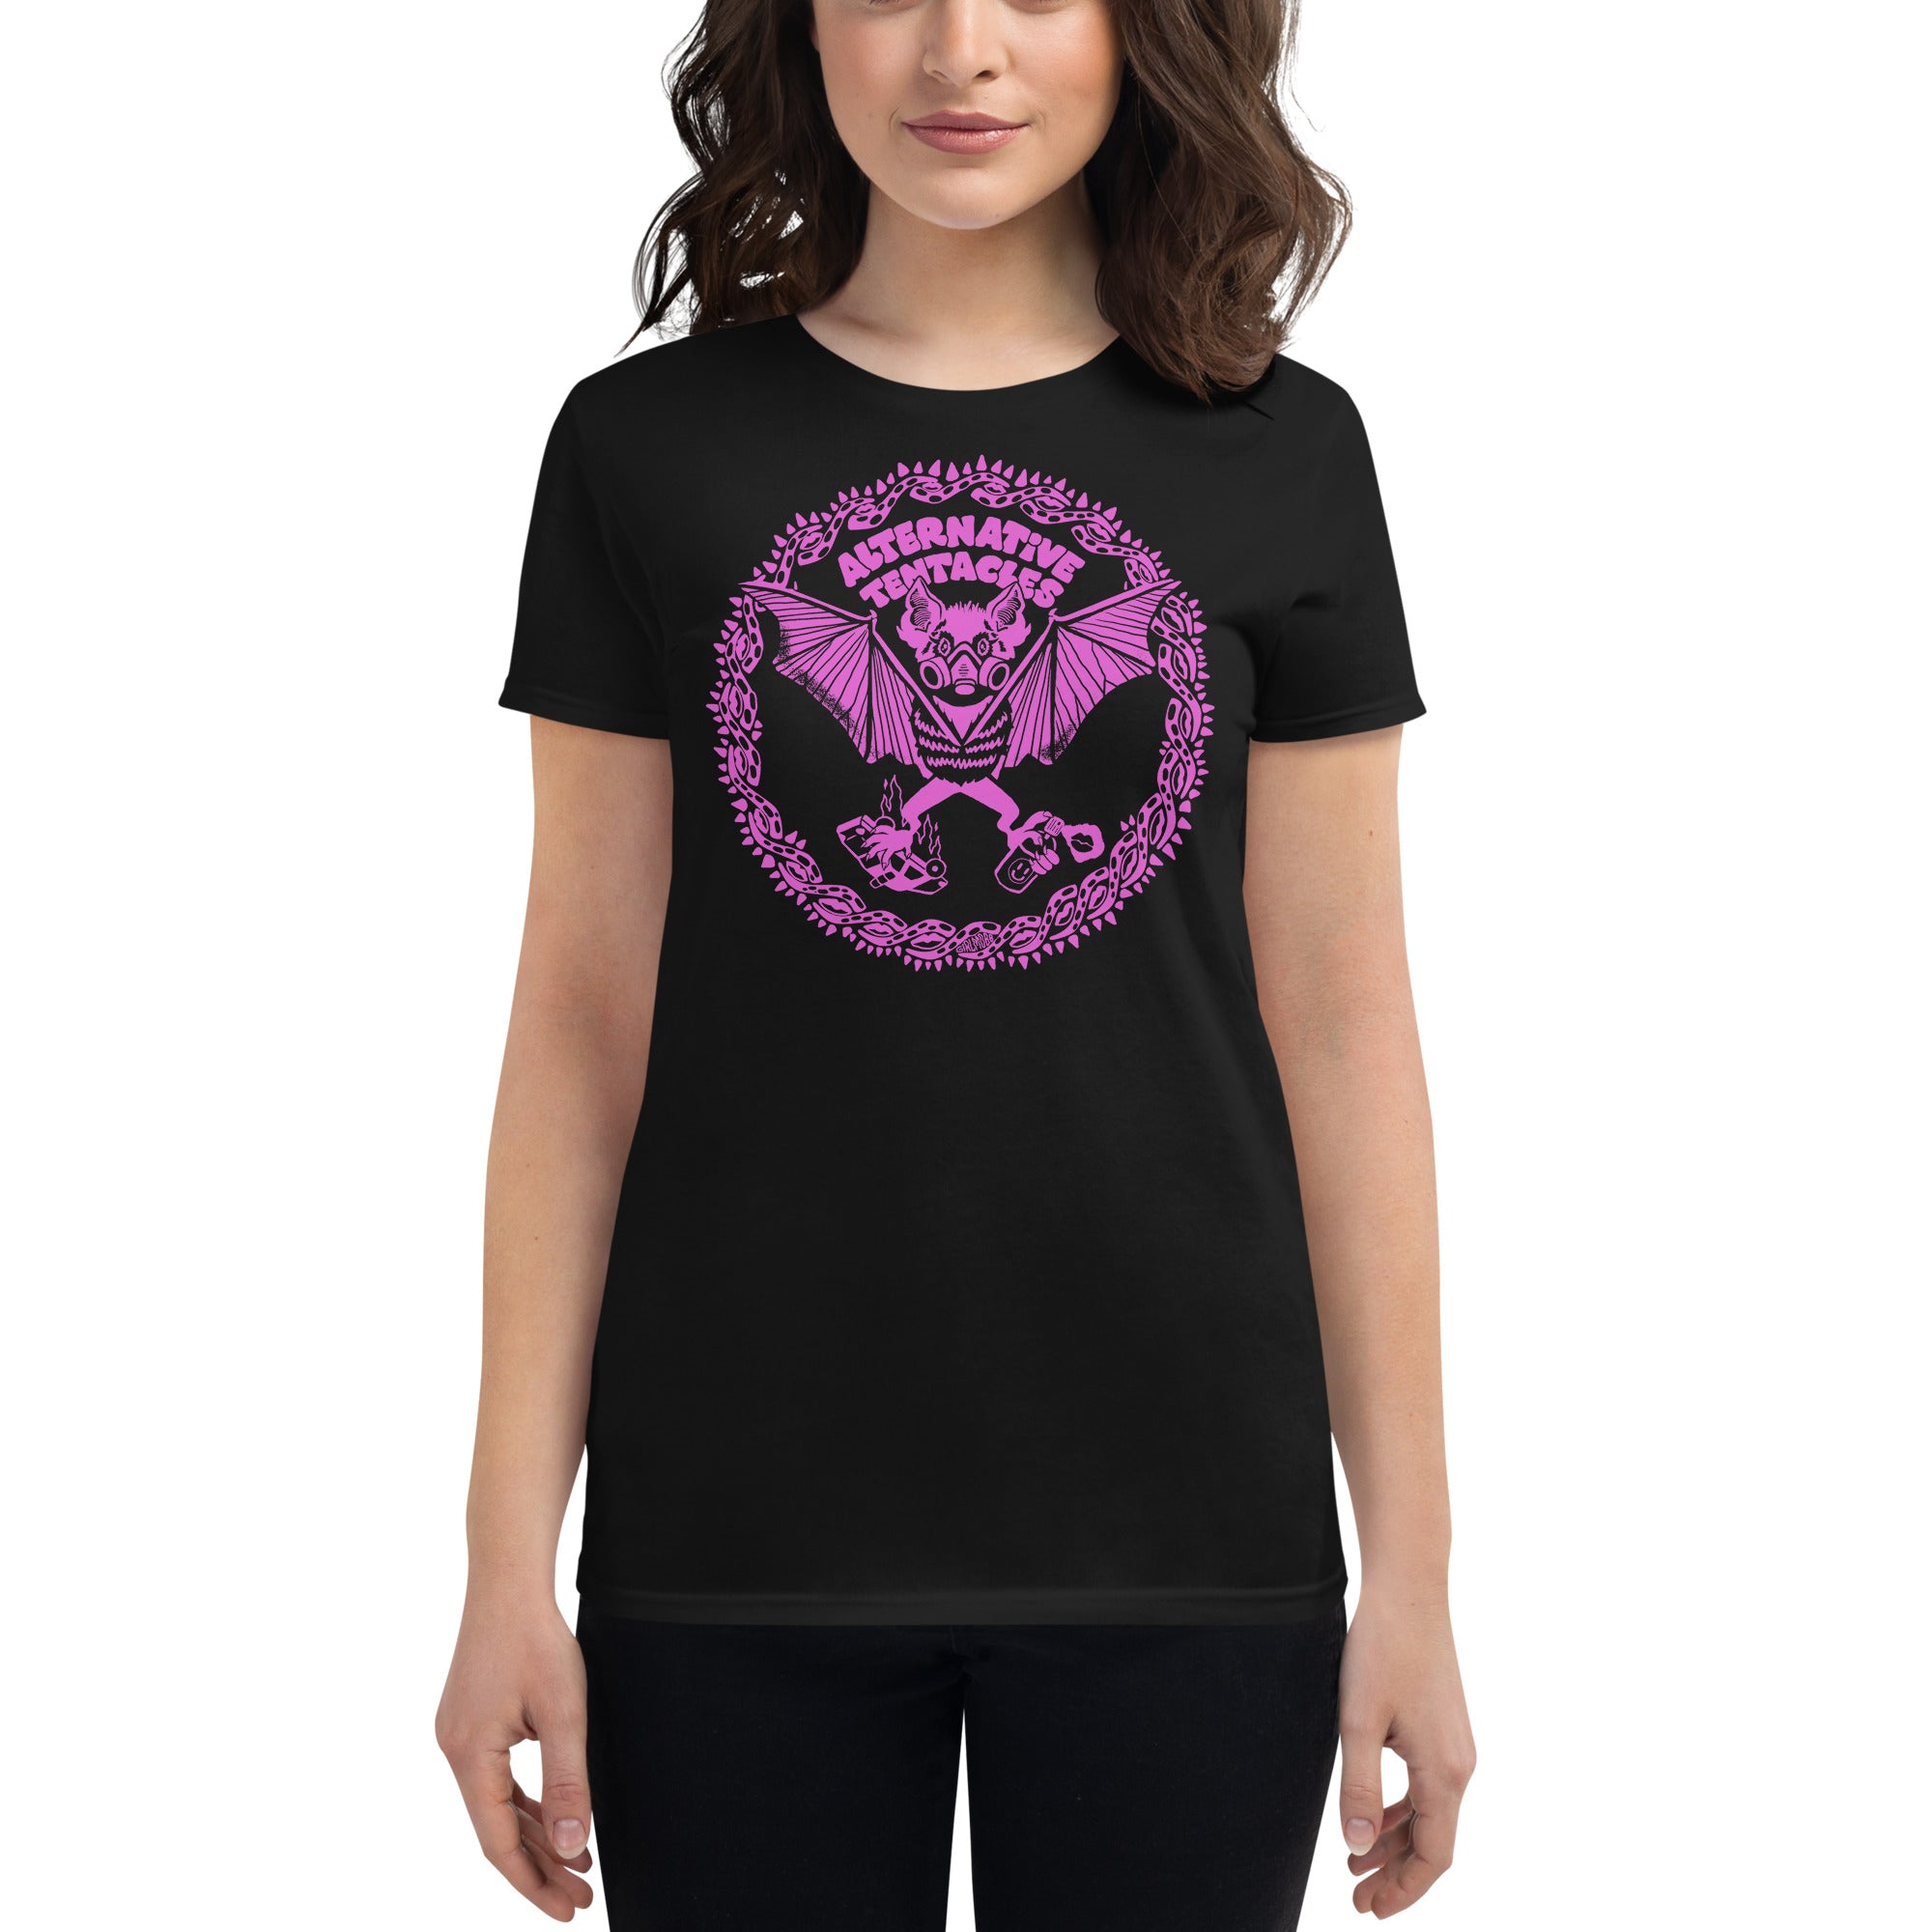 A.T. Bat Logo - "Girl Mobb" Femme Black T-shirt